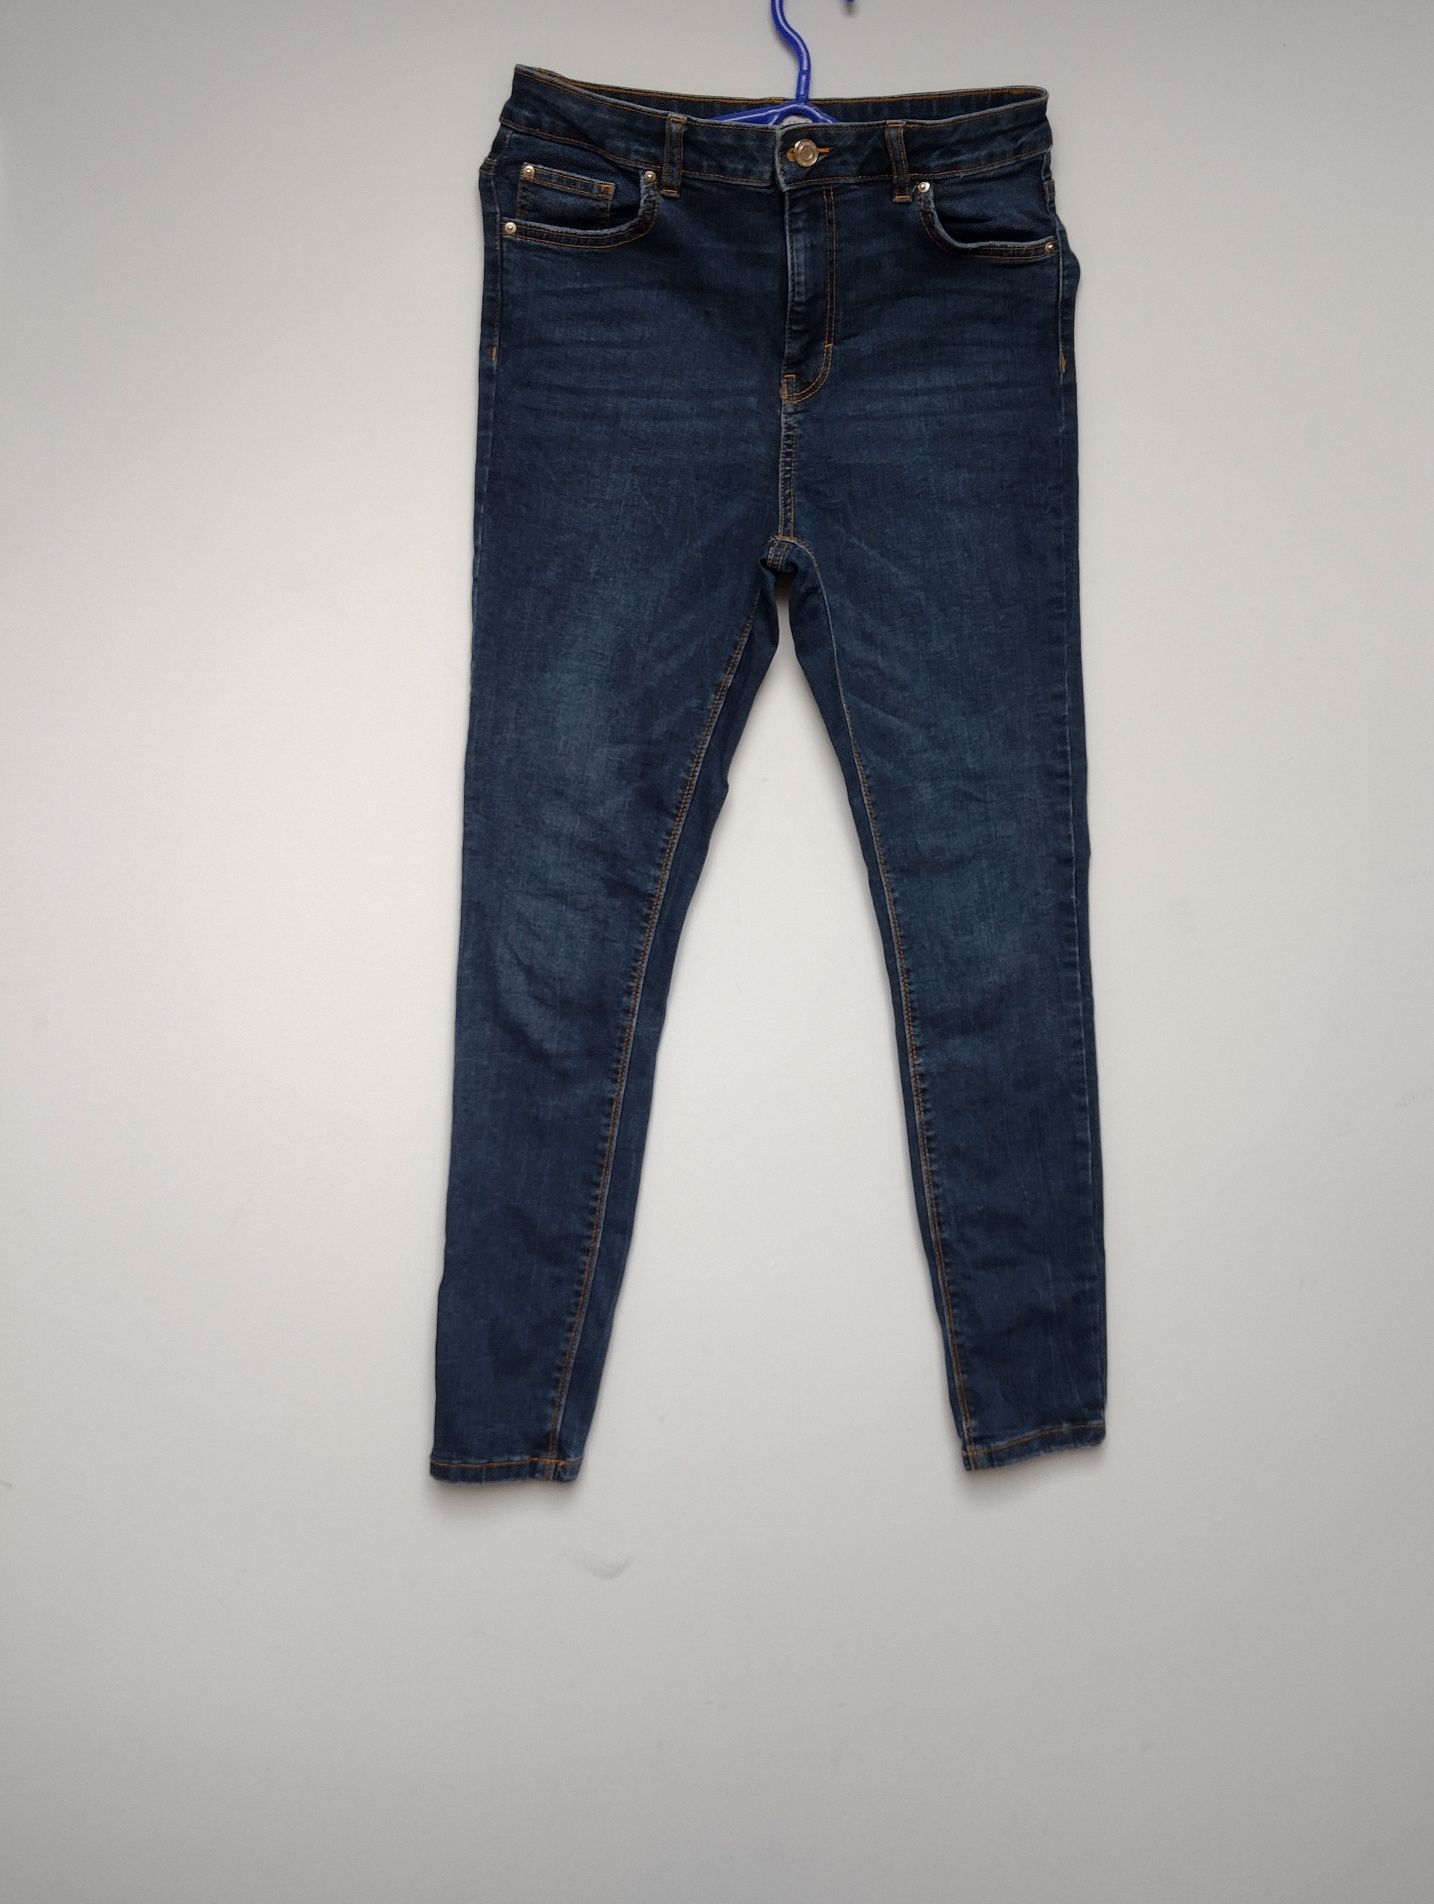 Spodnie jeansowe damskie firmy Denim, rozmiar 40/ L